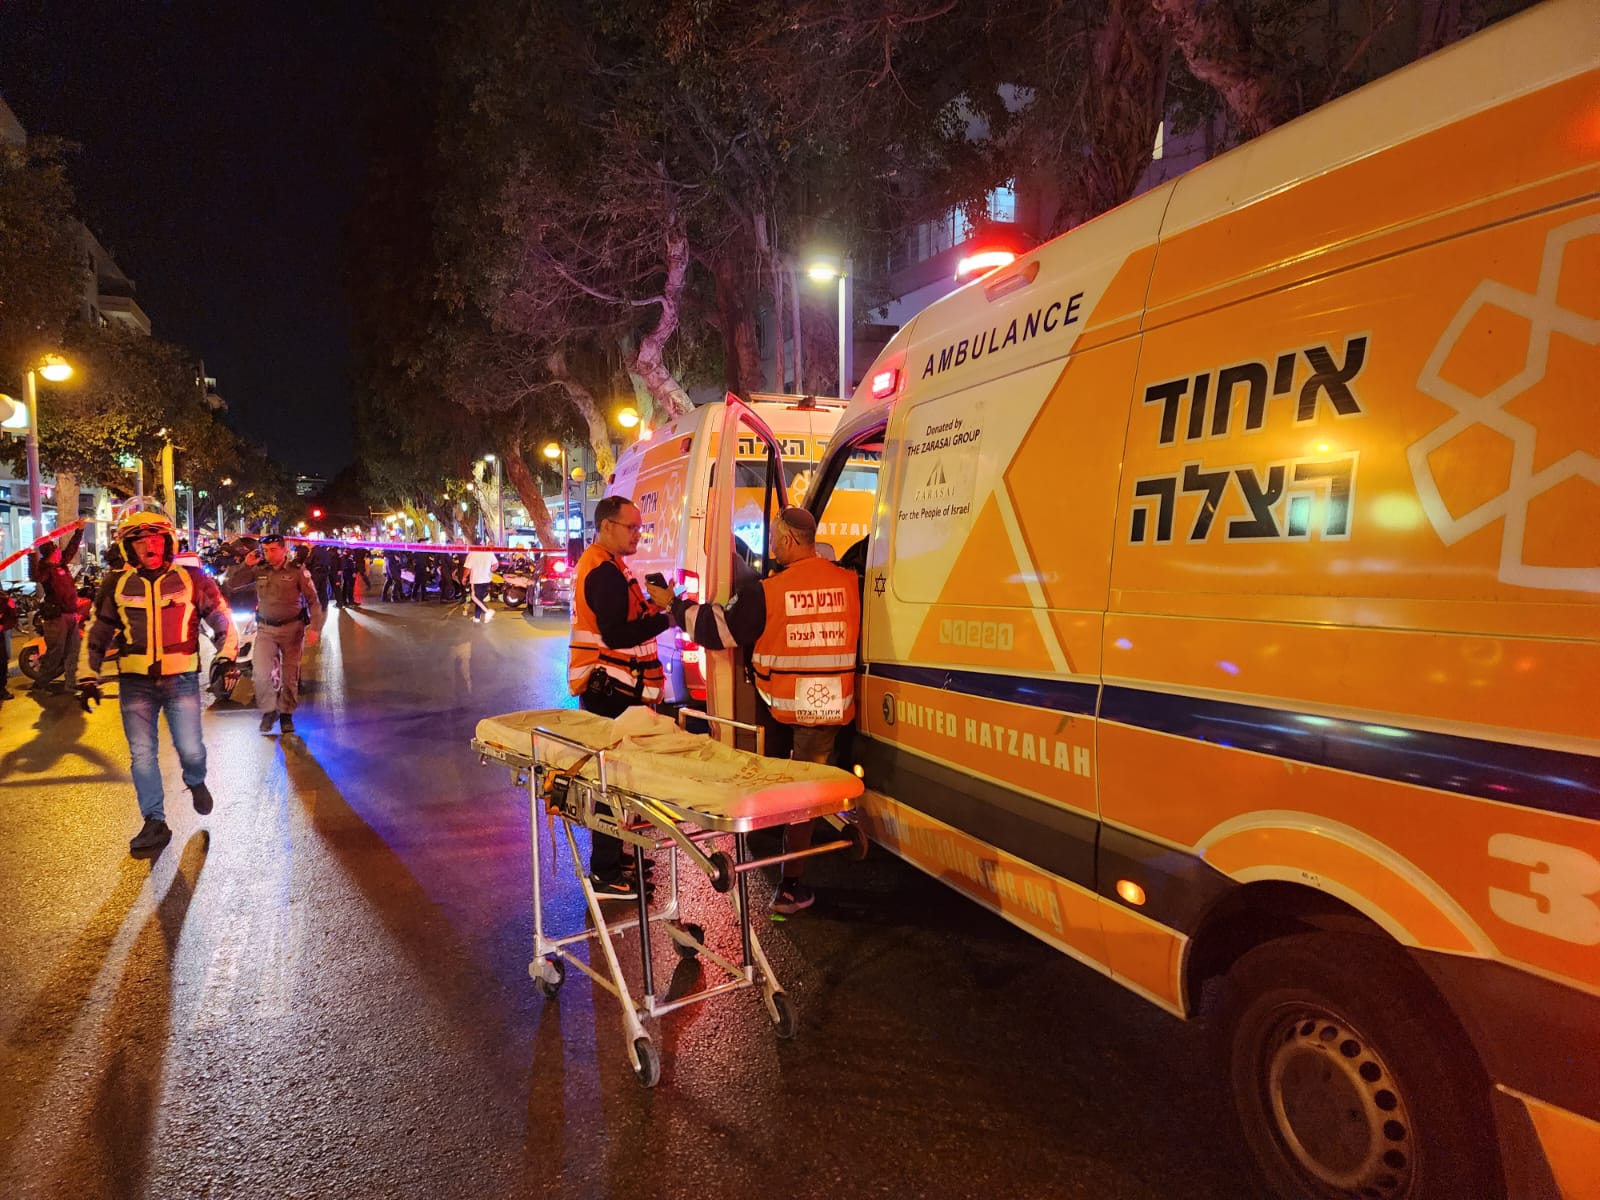  3 اصابات متفاوتة بعملية إطلاق نار في تل ابيب  